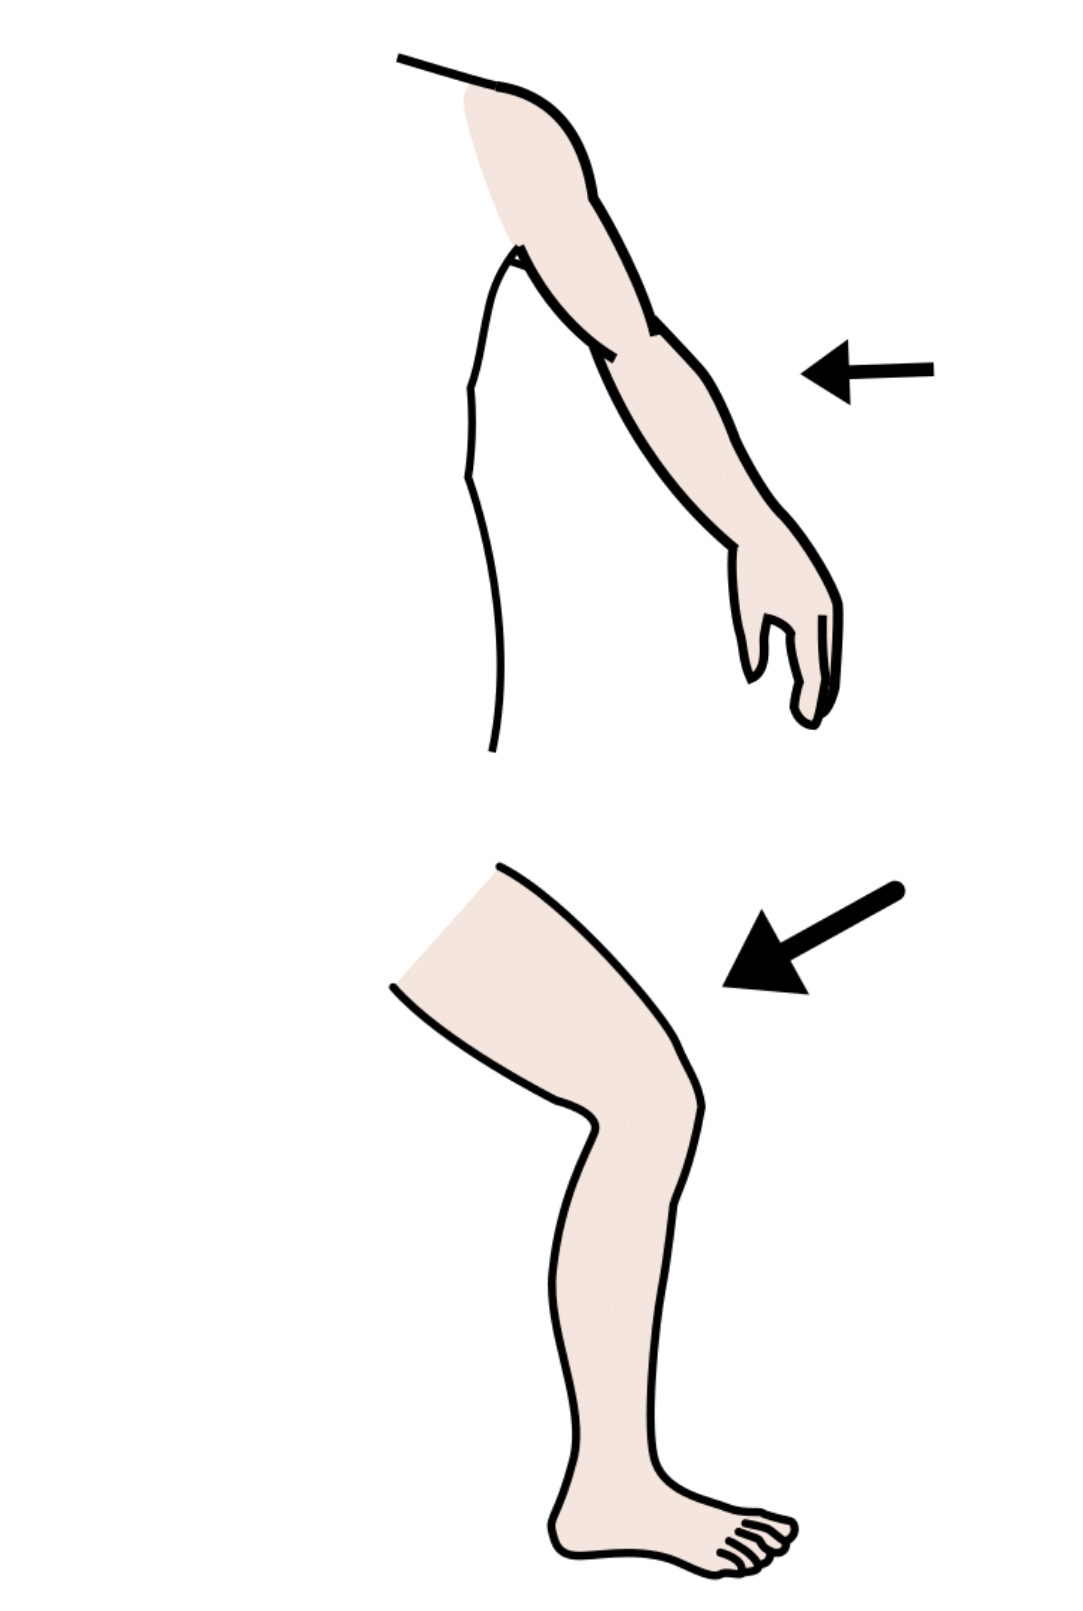 La imagen muestra un brazo y una pierna